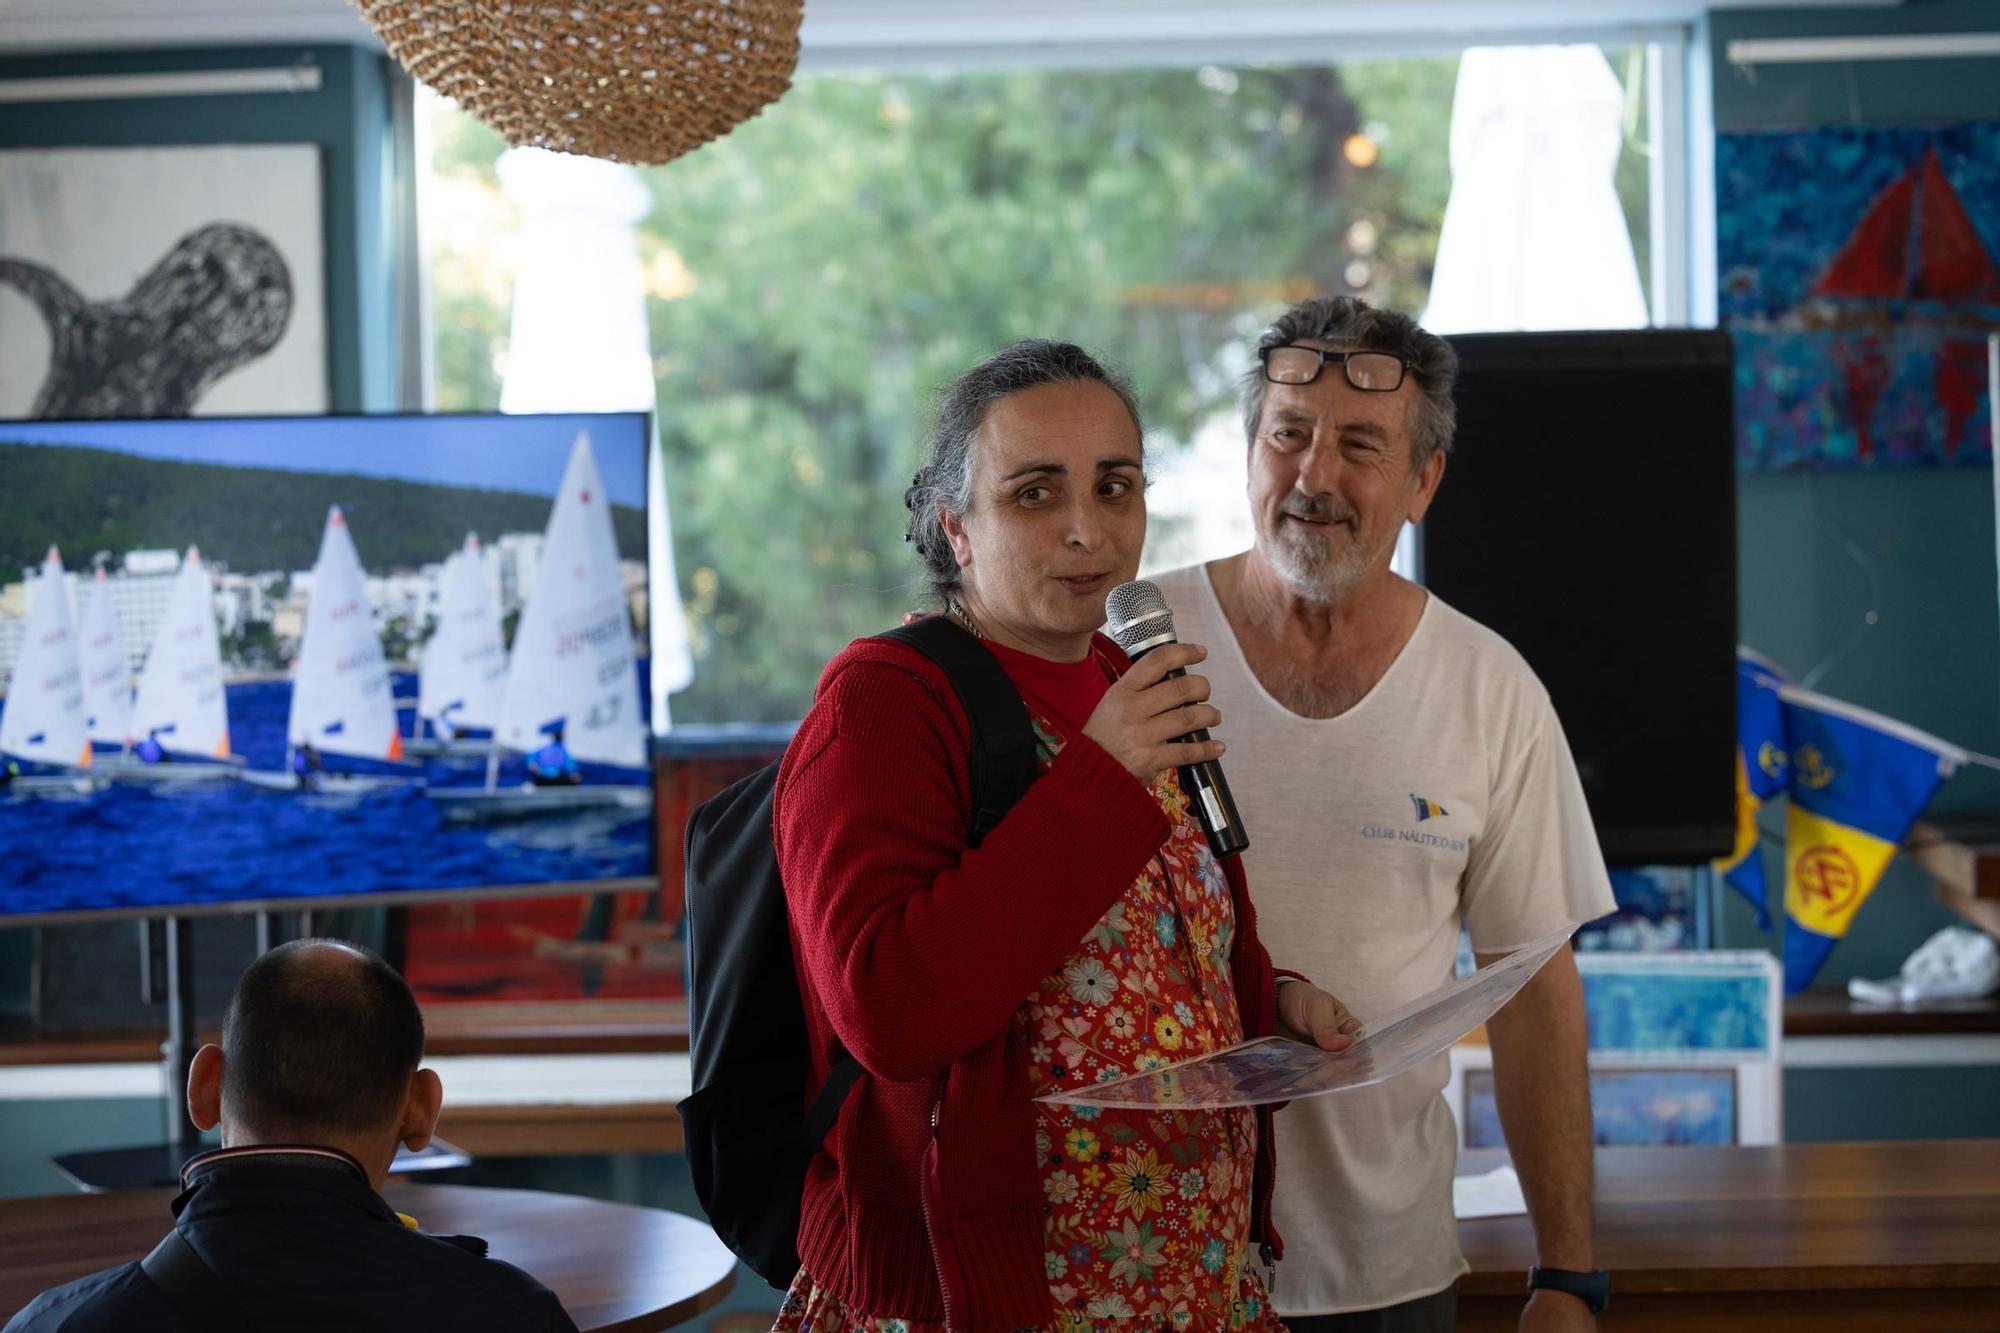 Galería: Un mar de posibilidades en Club Náutico Ibiza